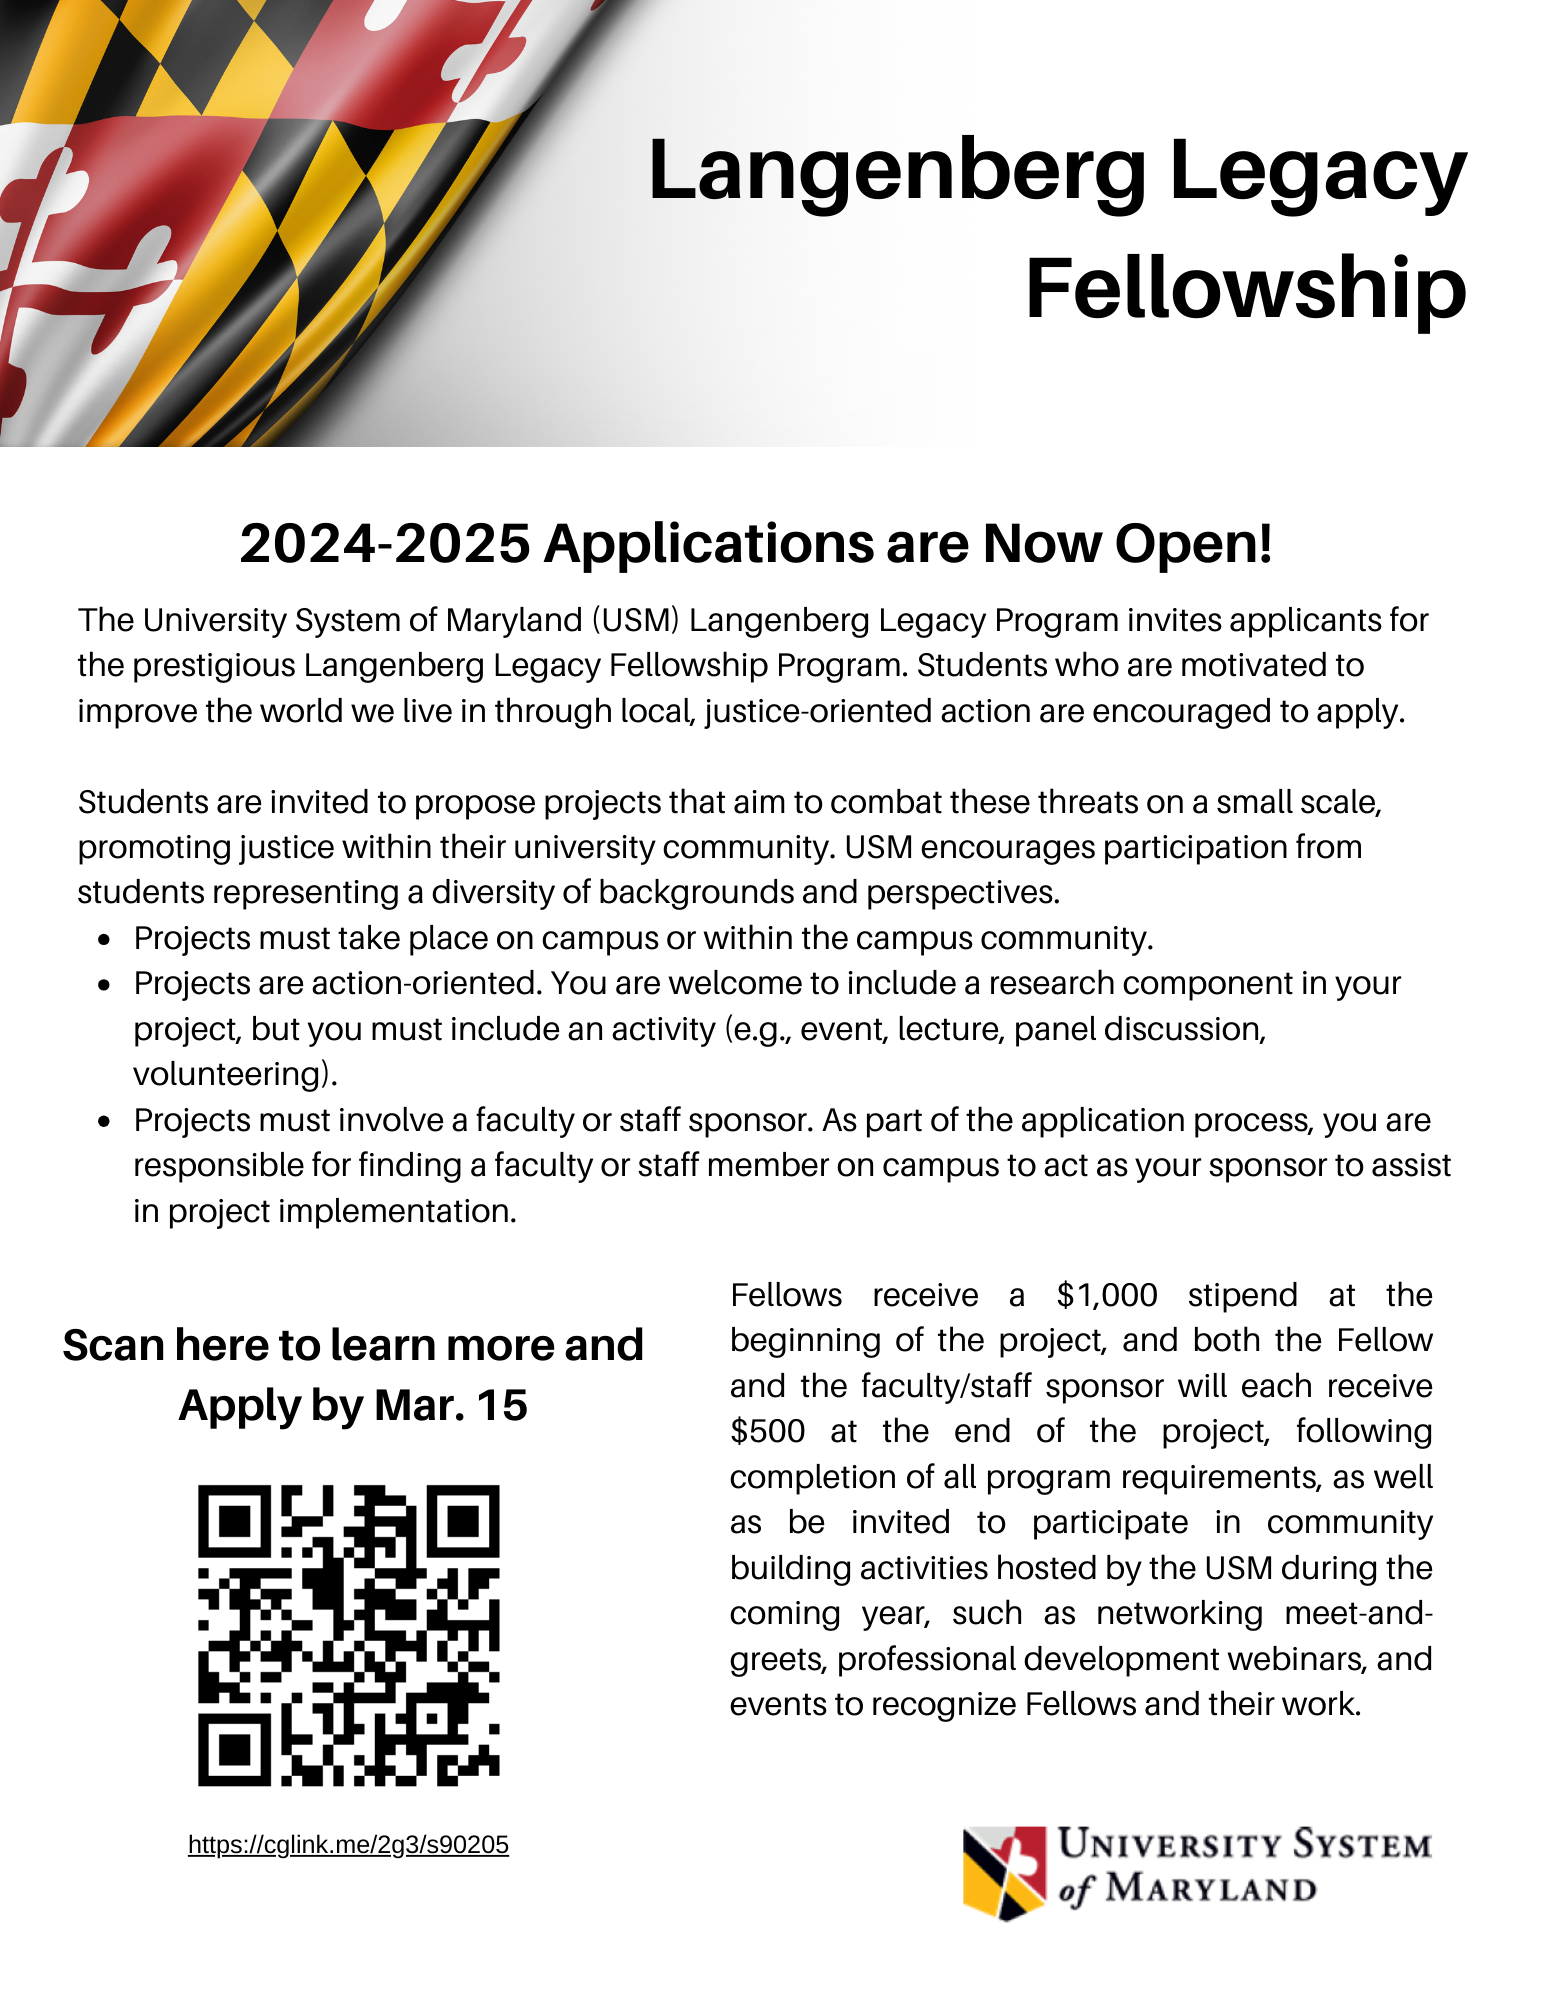 Langenberg Legacy Fellowship Applications Open Through Mar. 15!